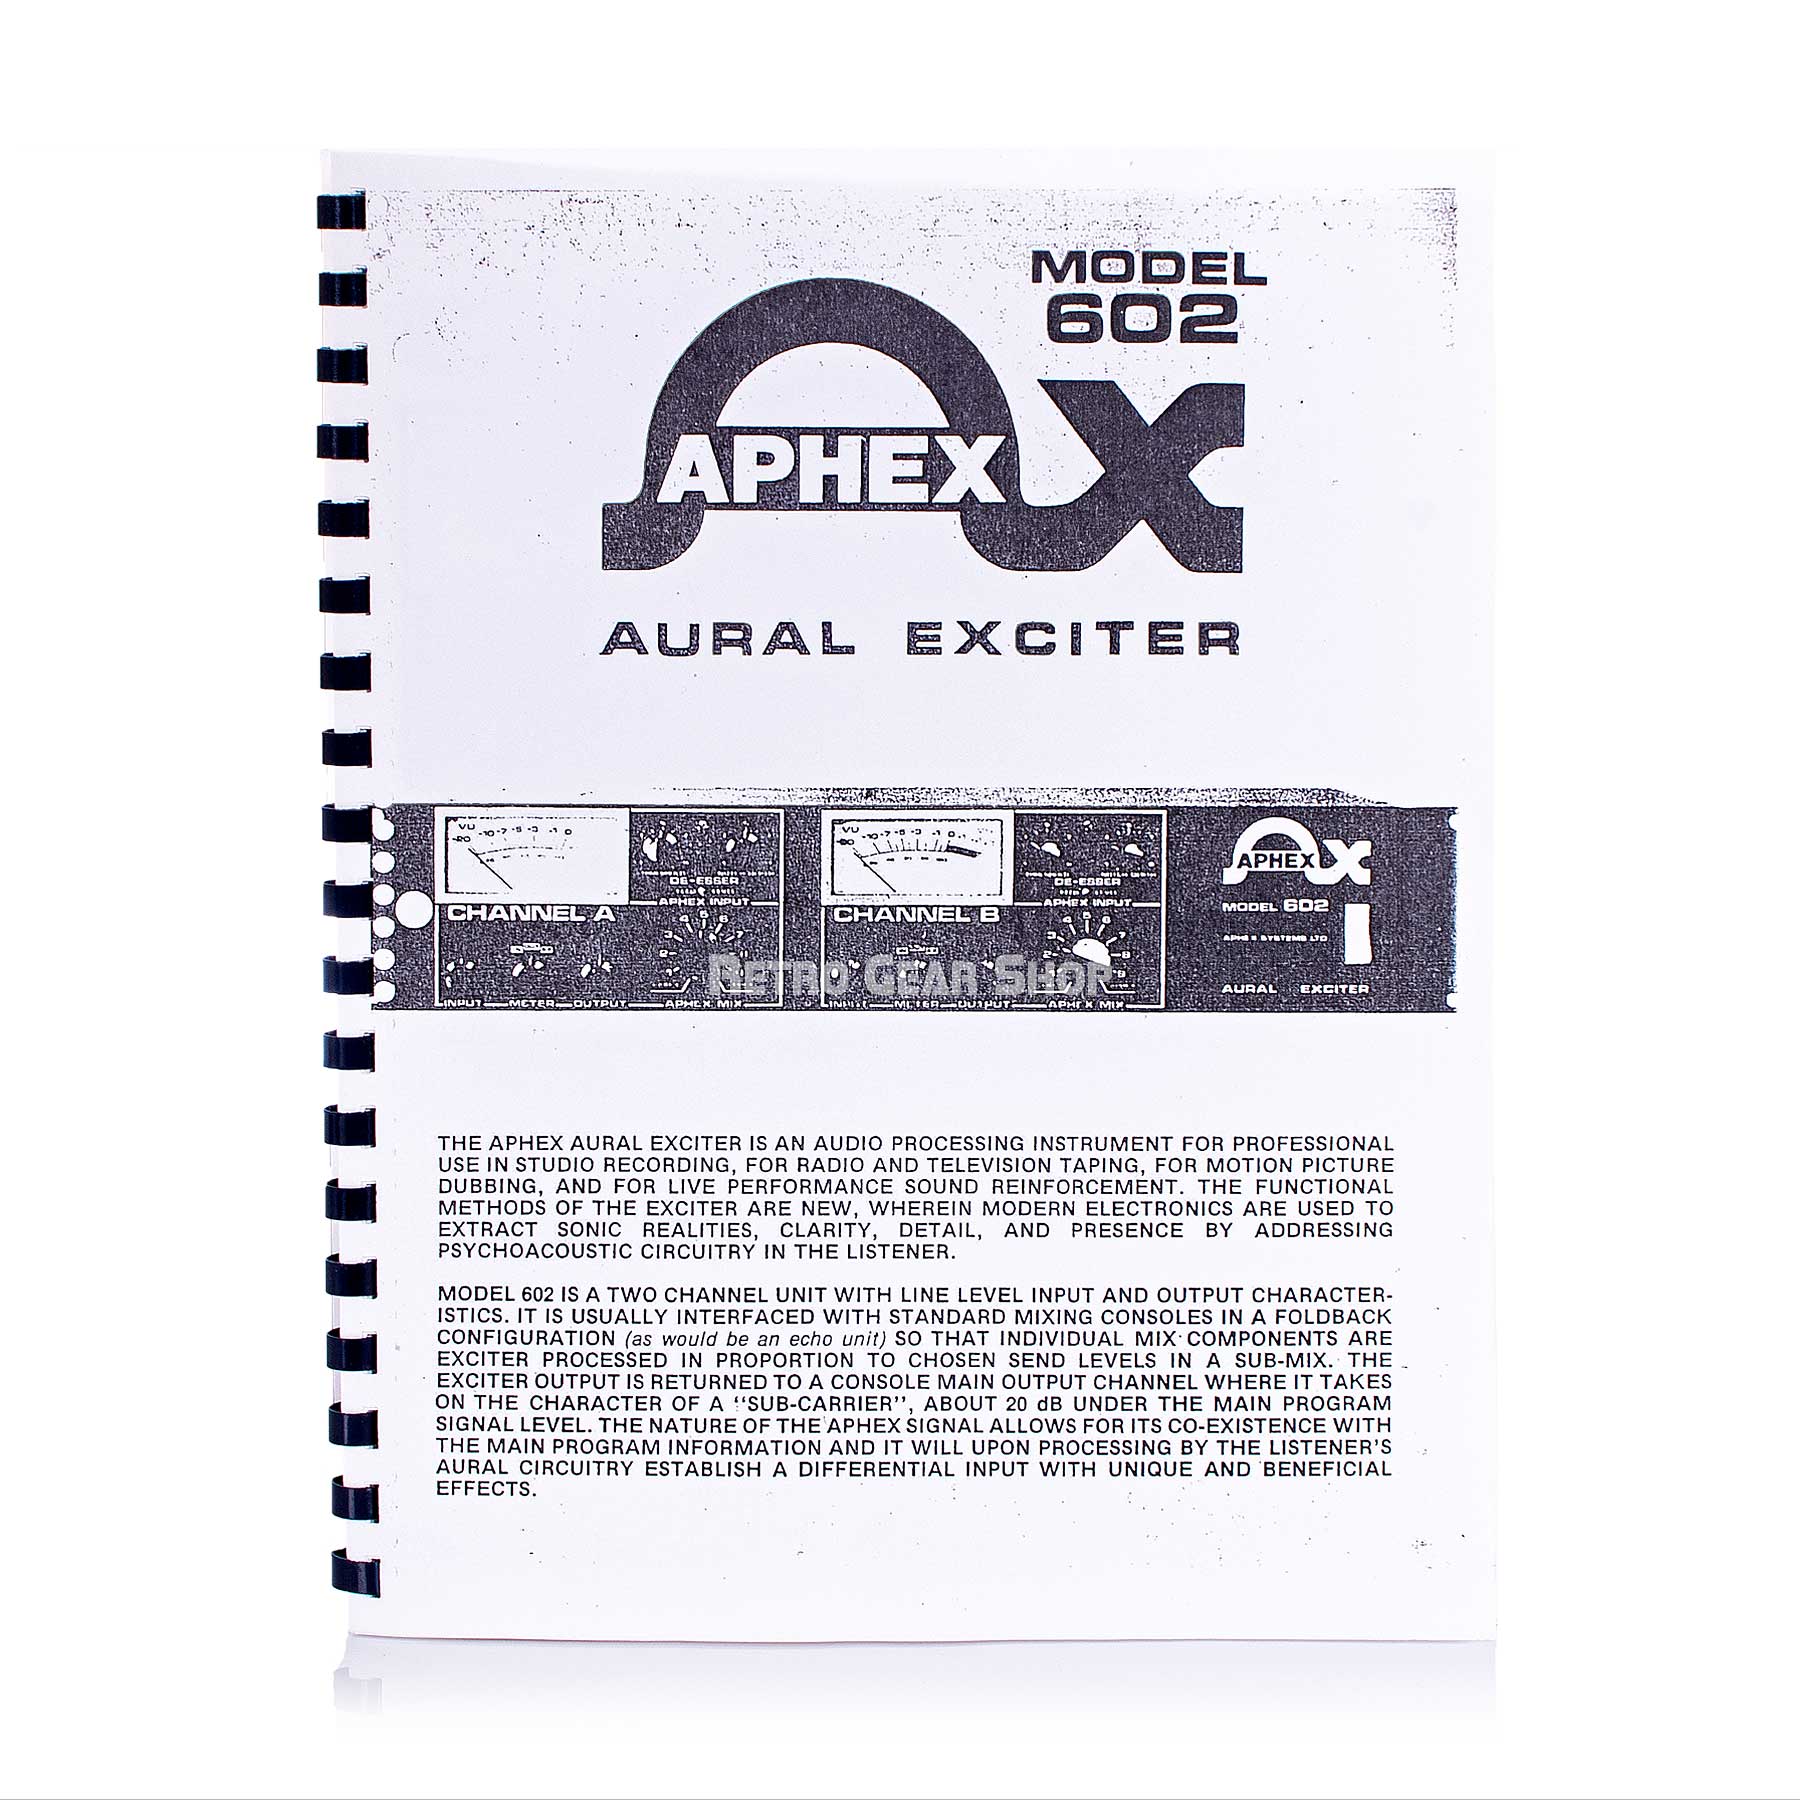 Aphex Aural Exciter 602 Manual